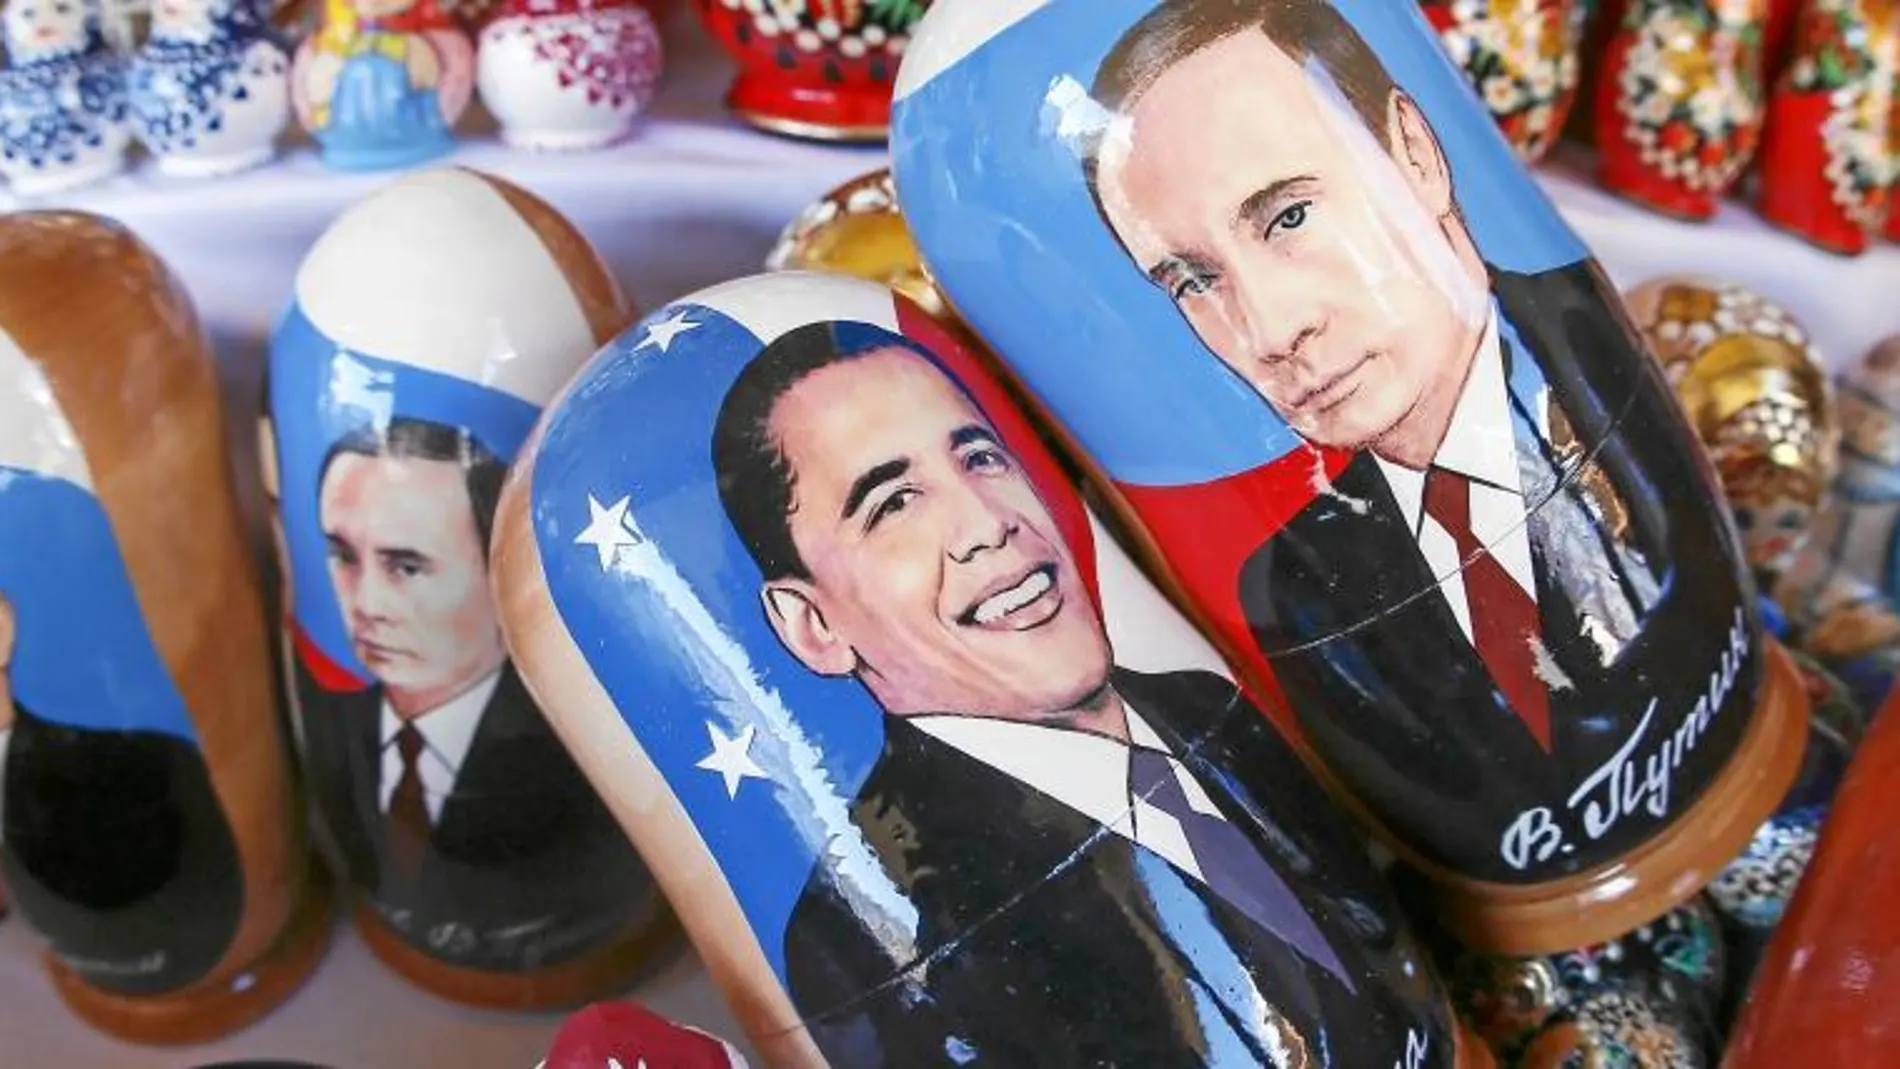 Las tiendas de souvenirs de Sochi han puesto a la venta matrioskas de Putin y Obama